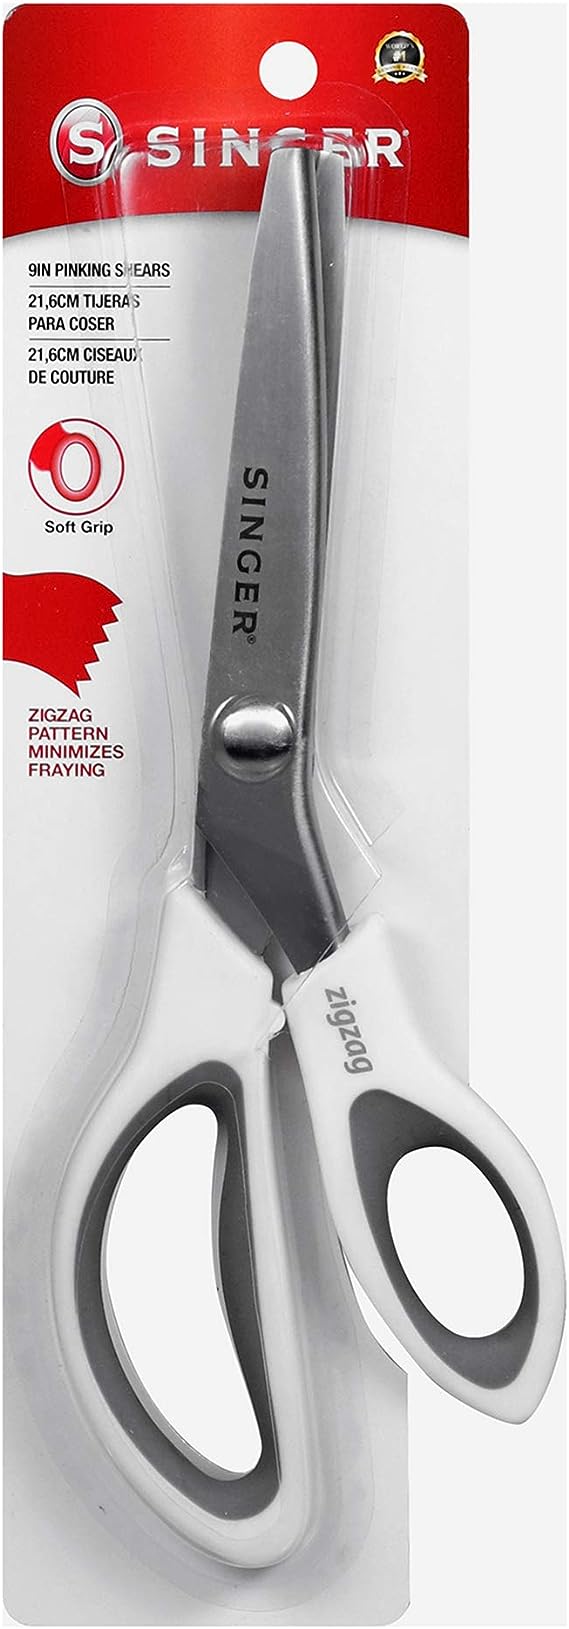 SINGER 9" Pinking Shears - Zig Zag Scissors for Fabric